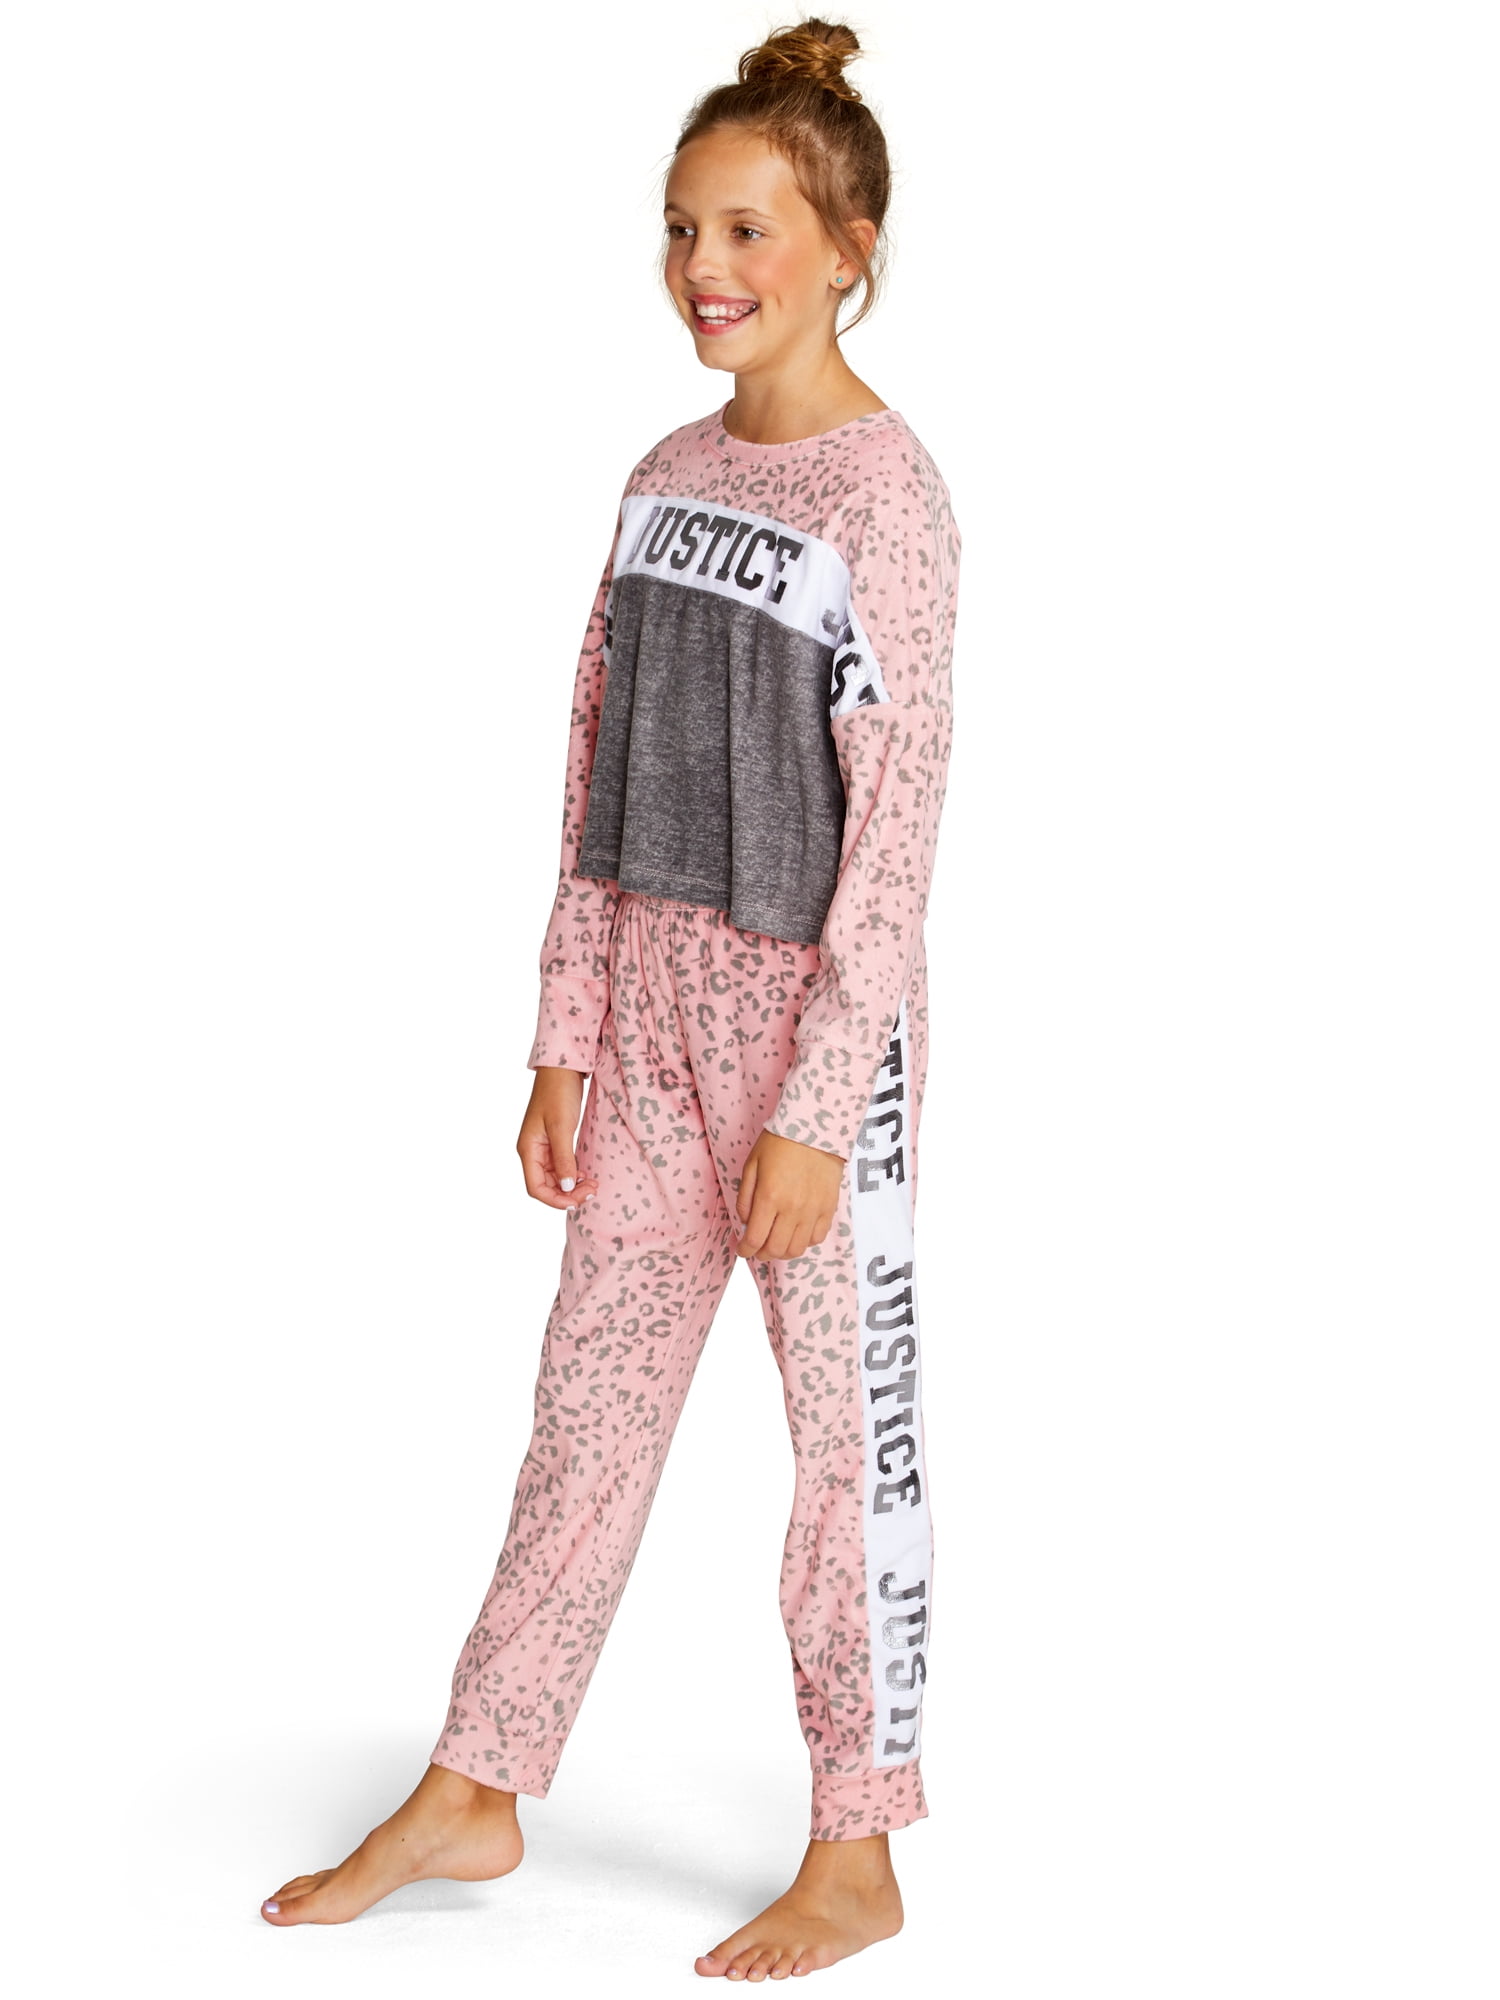 Singer Girl Black B Cotton Crewneck Boys-Girls Sleepwear Pajama 2 Pcs Set